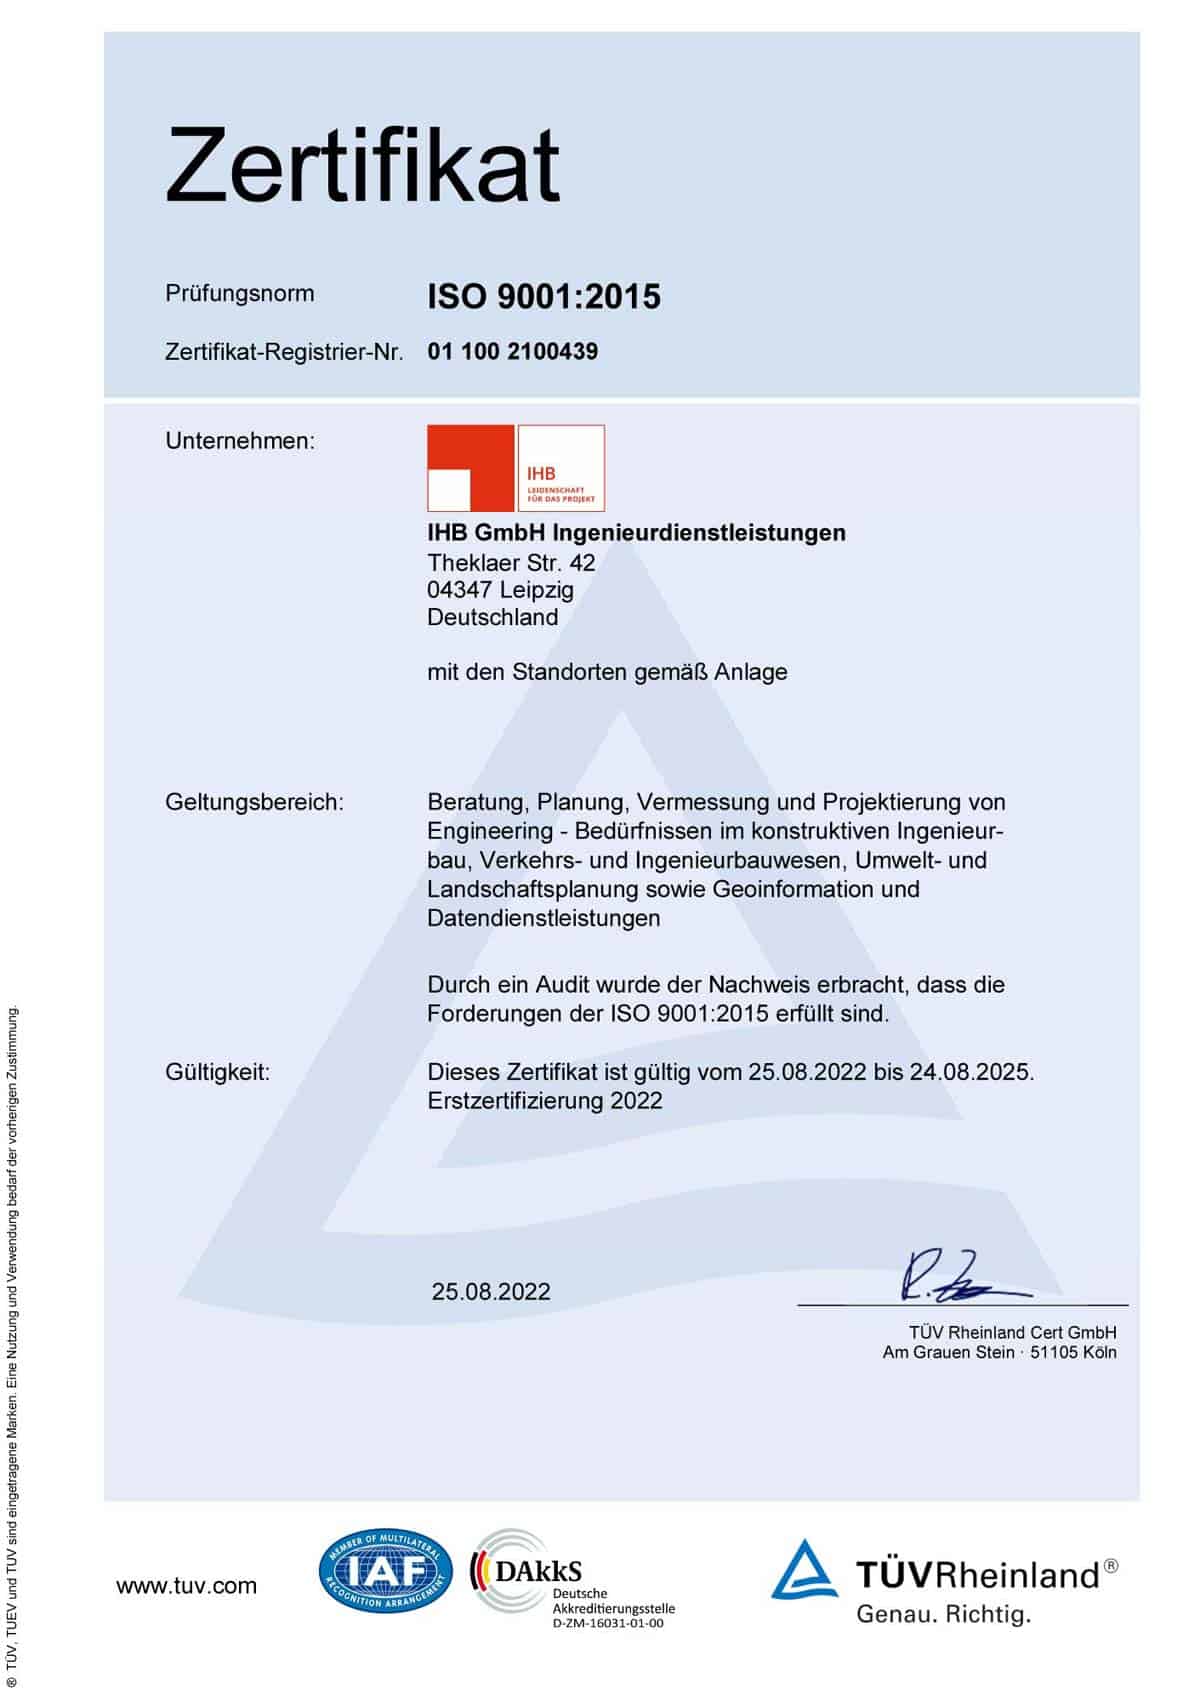 Zertifikat DIN EN ISO 9001